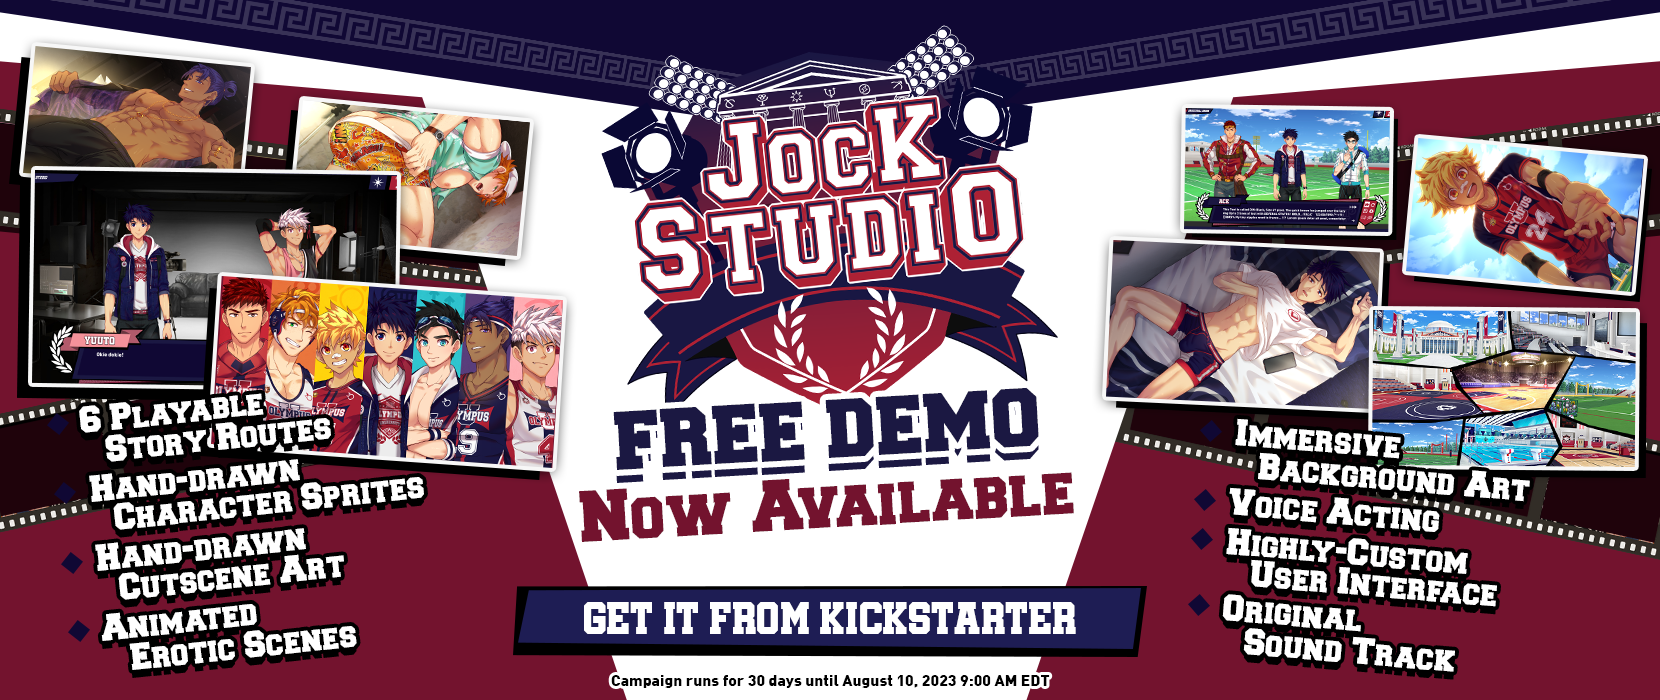 Jock studio demo download